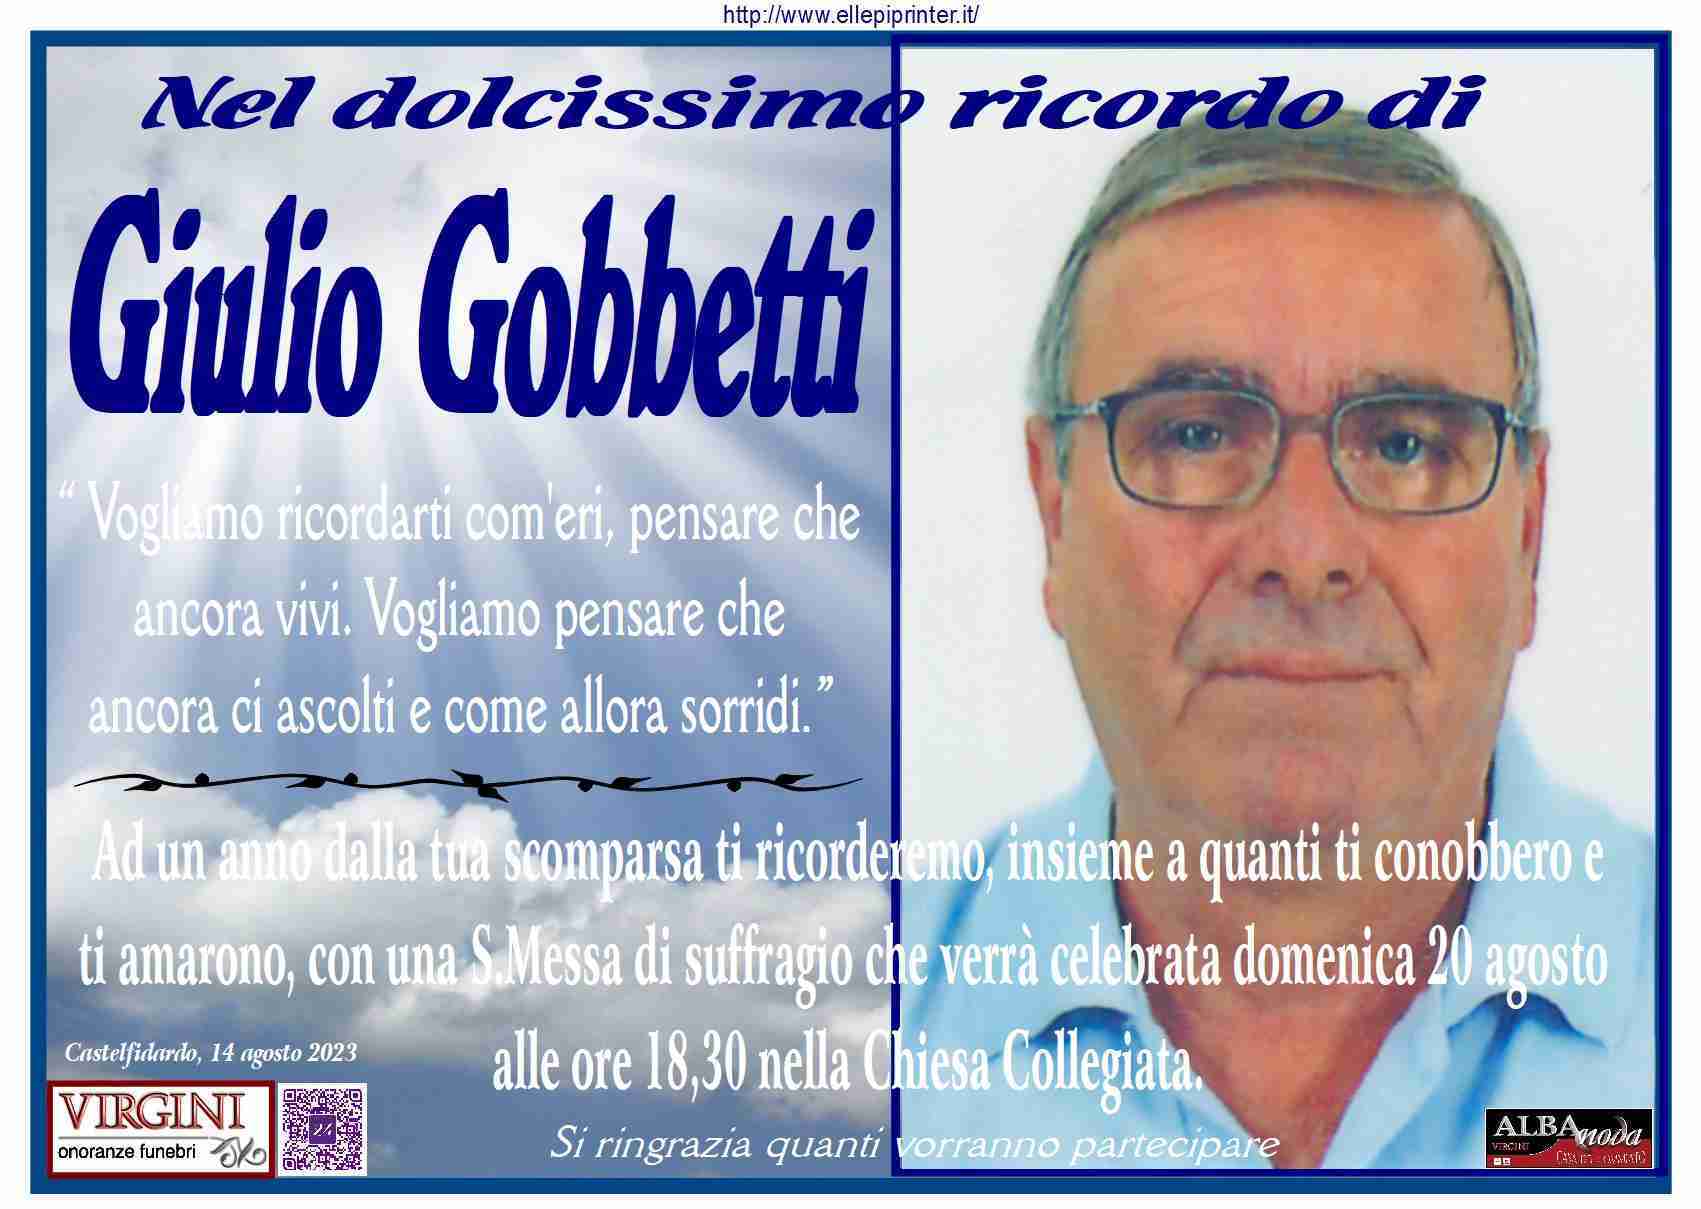 Giulio Gobbetti